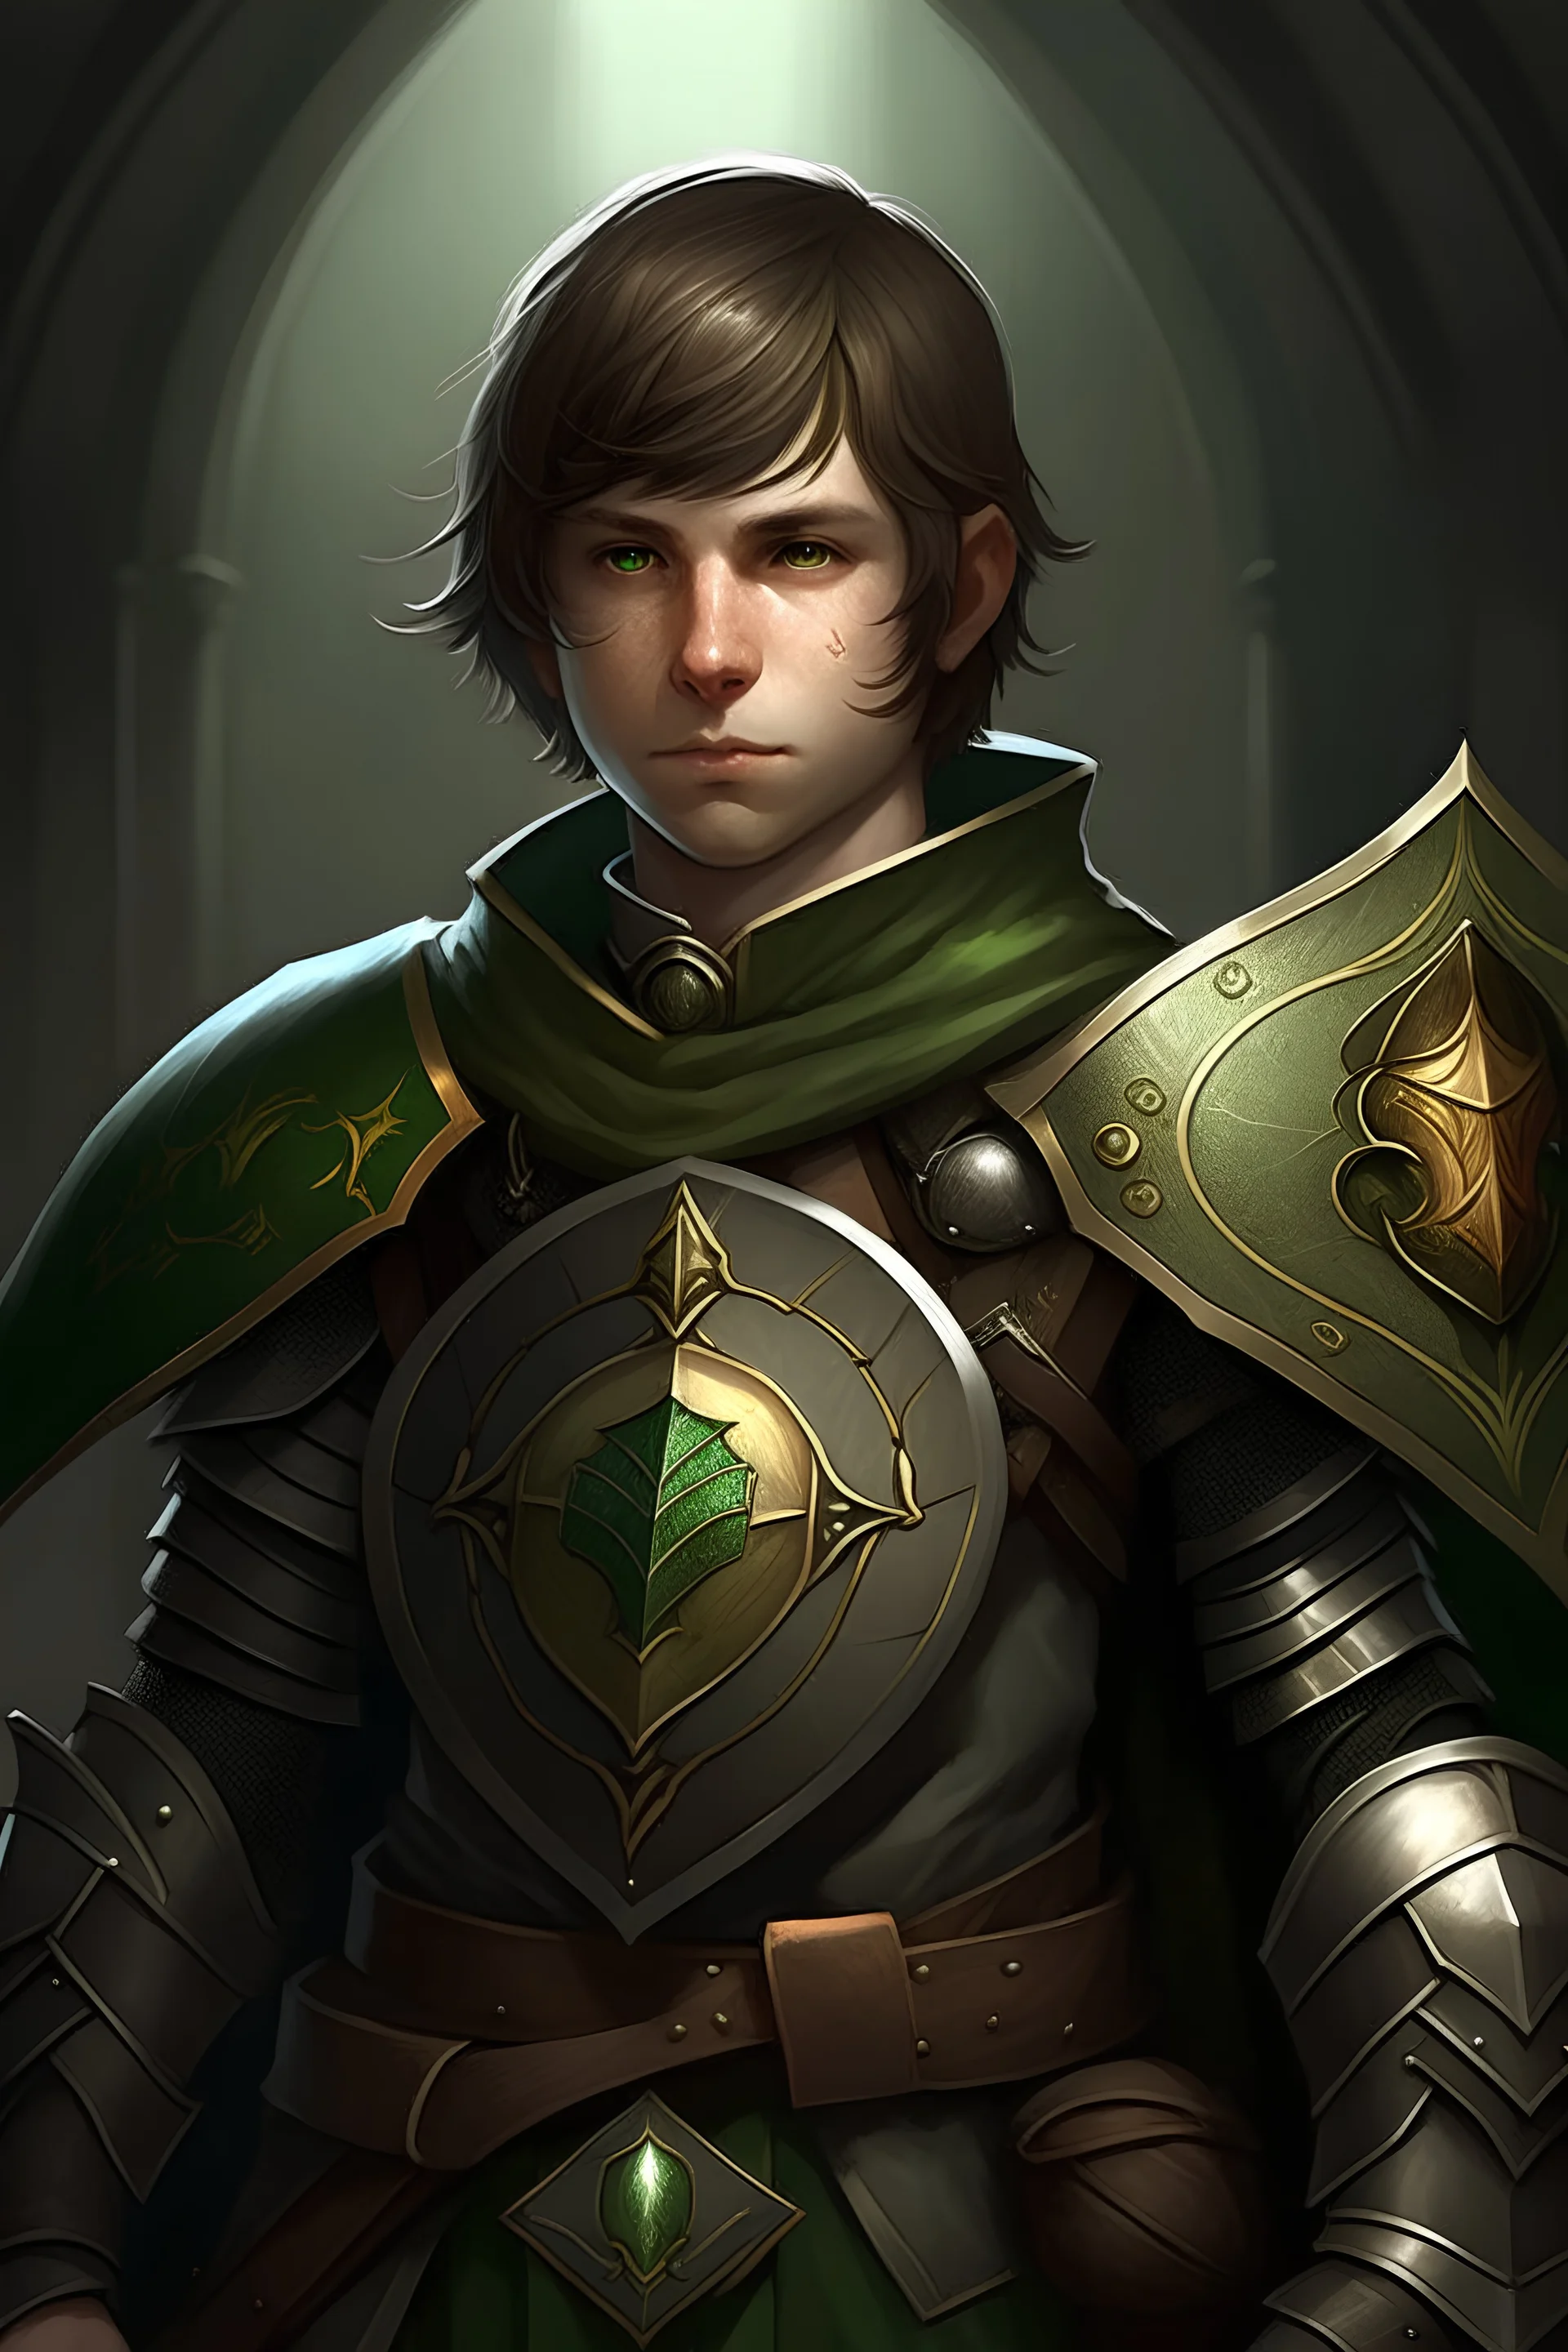 immagine fantasy chierico con occhi verdi capelli corti marroni, armatura, con mazza e uno scudo